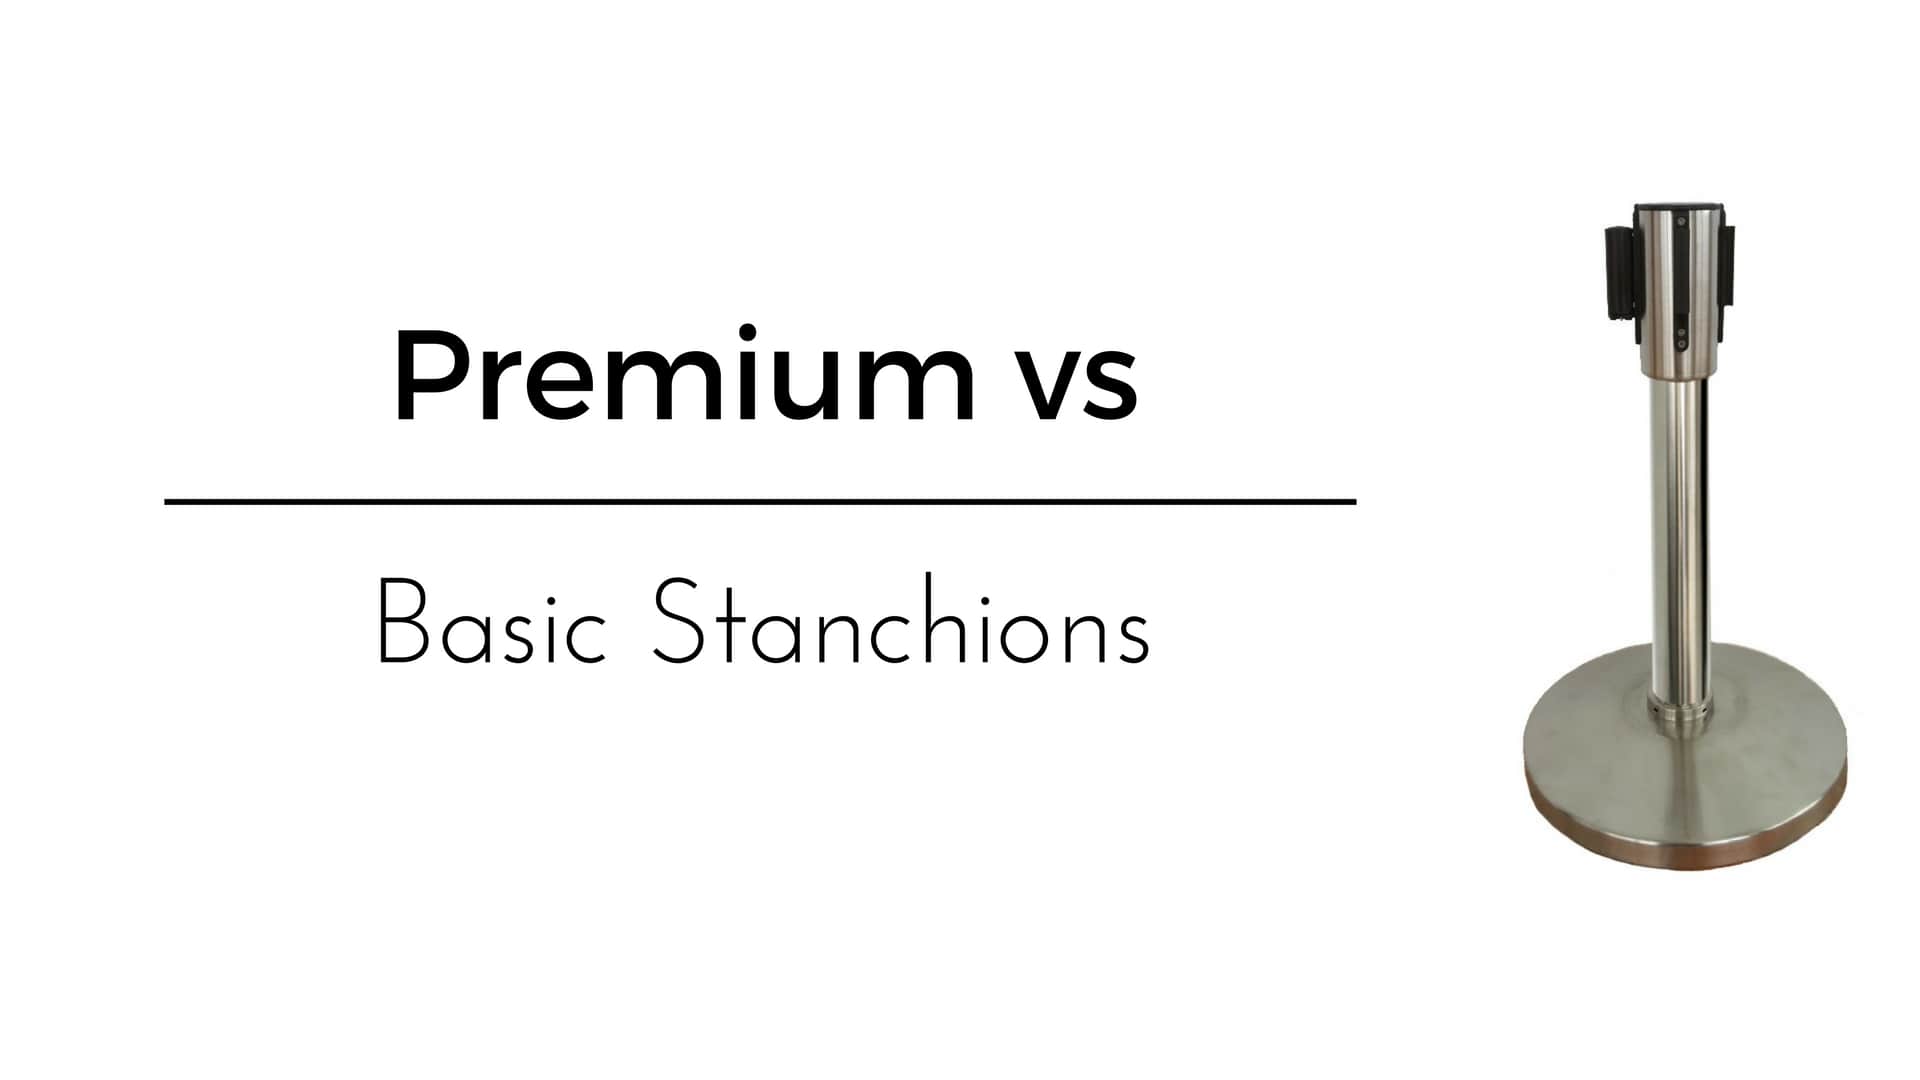 Premium vs. Basic Stanchions